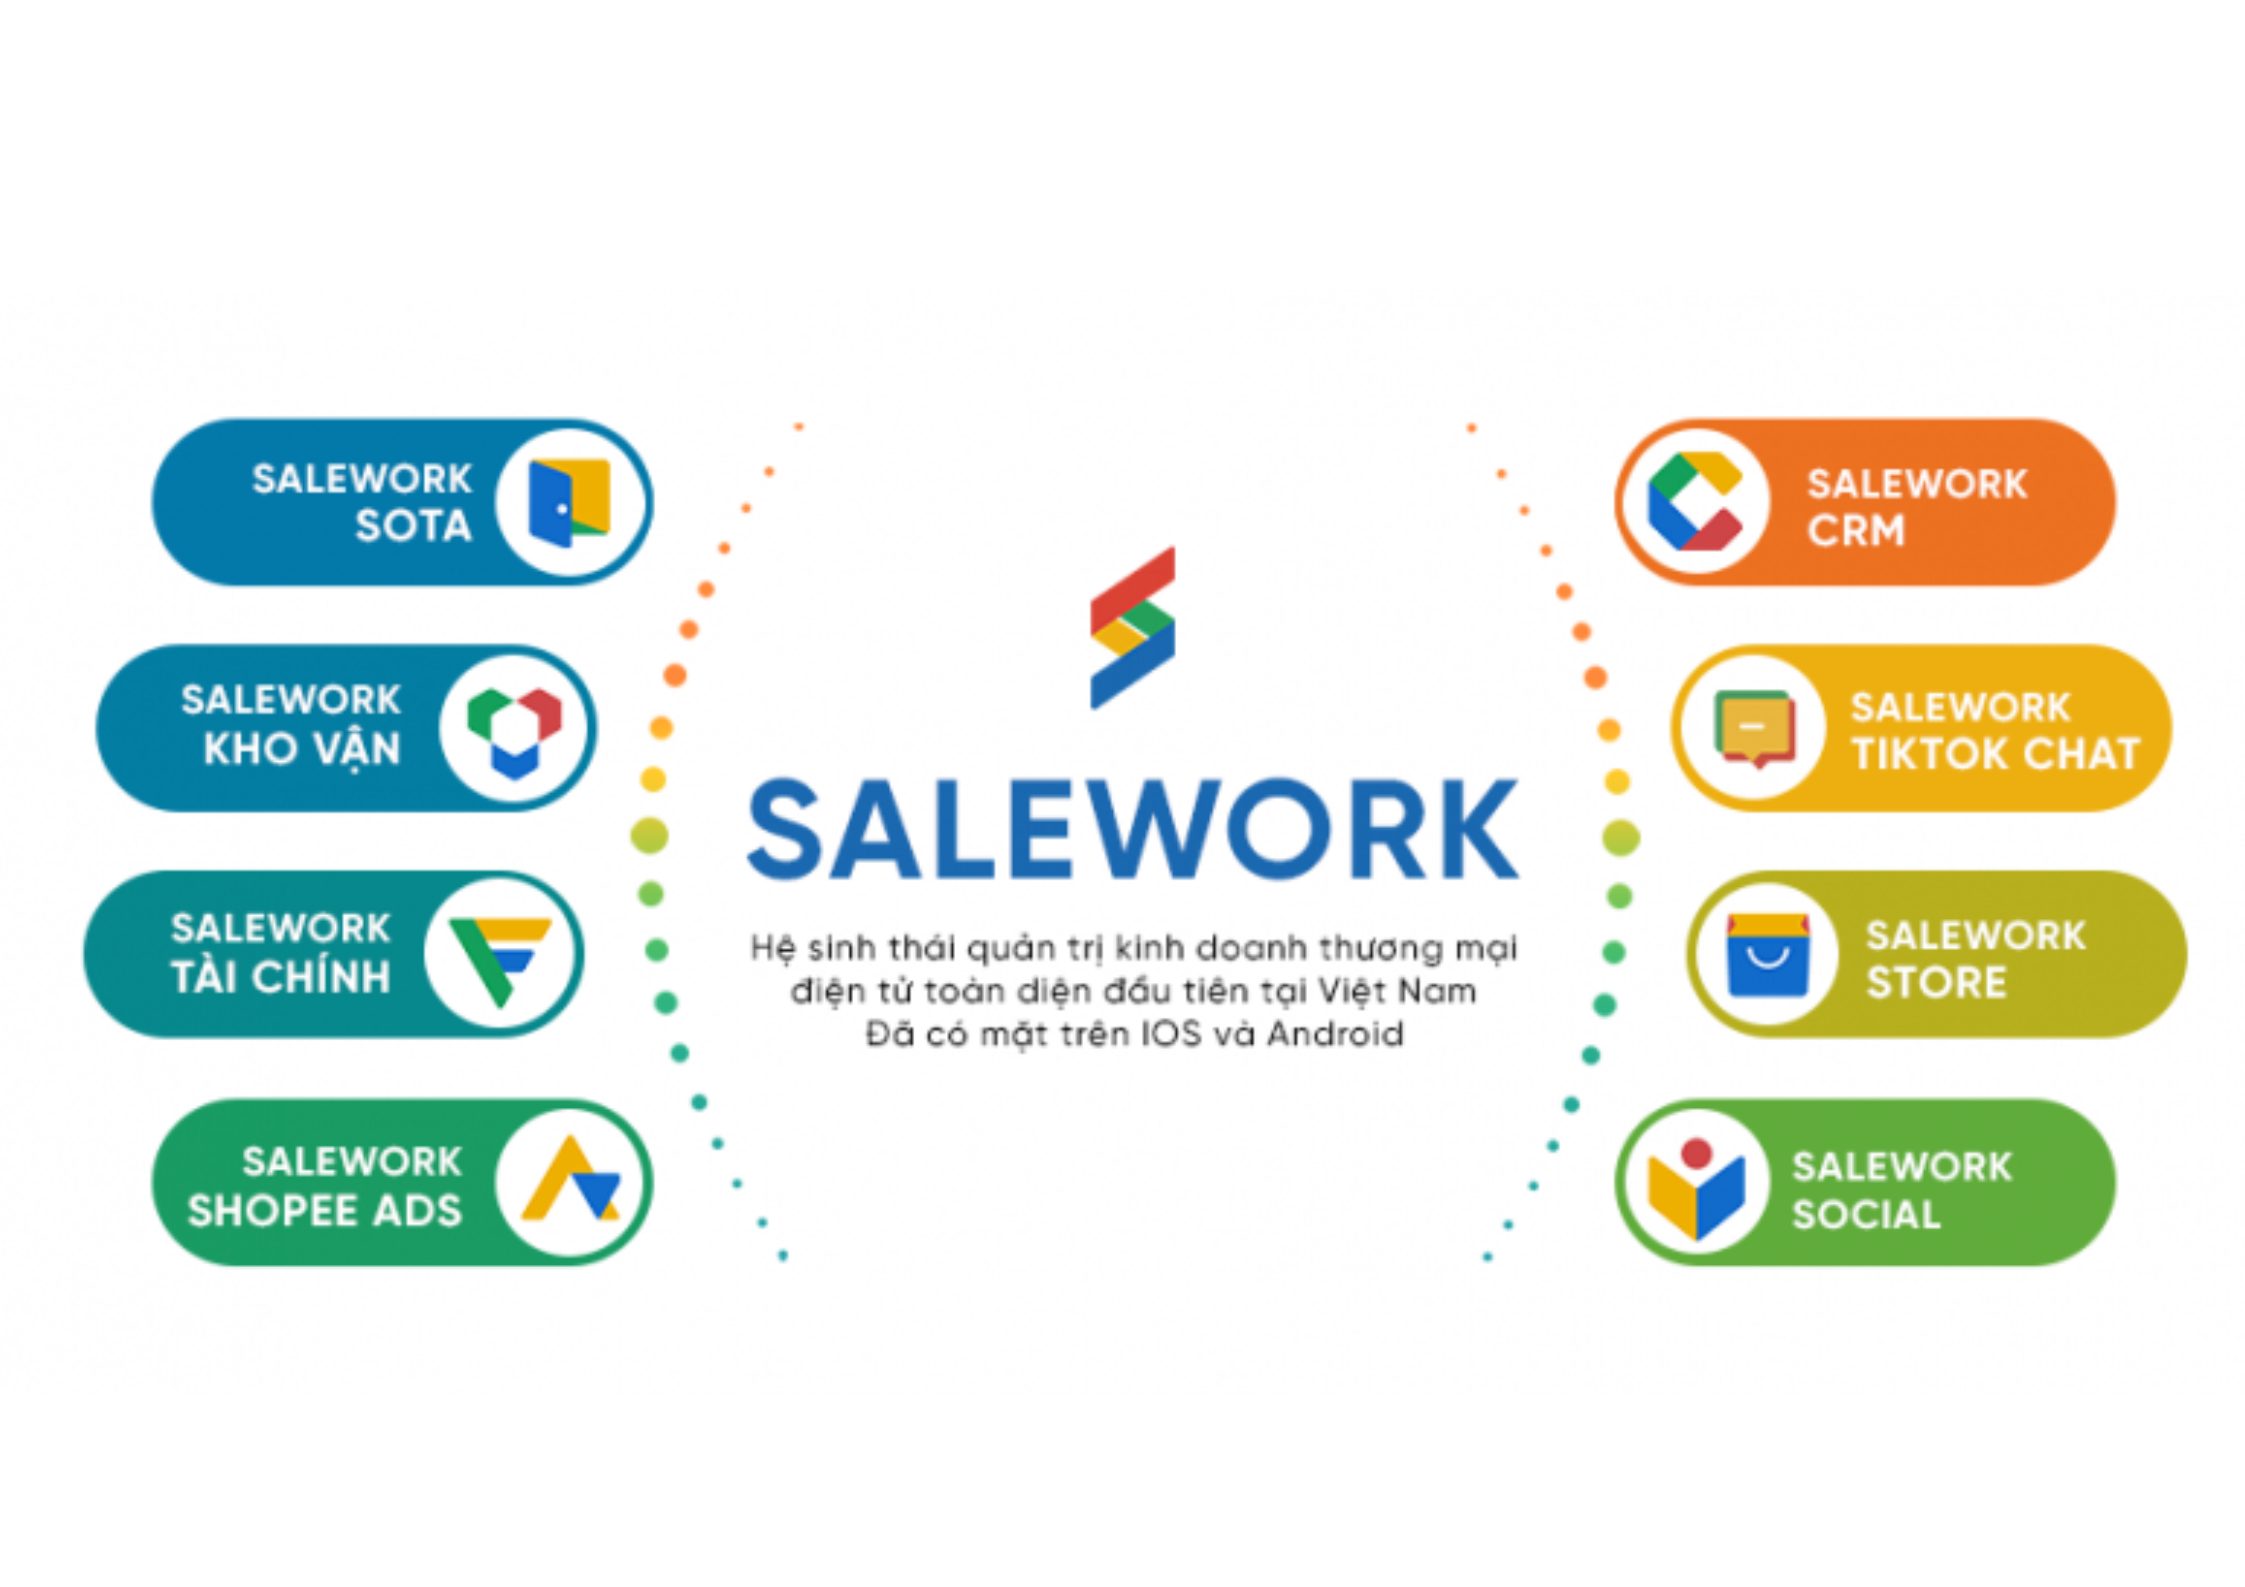 [Baodansinh.vn] Tối ưu hiệu quả kinh doanh với phần mềm quản lý bán hàng online Salework - 11